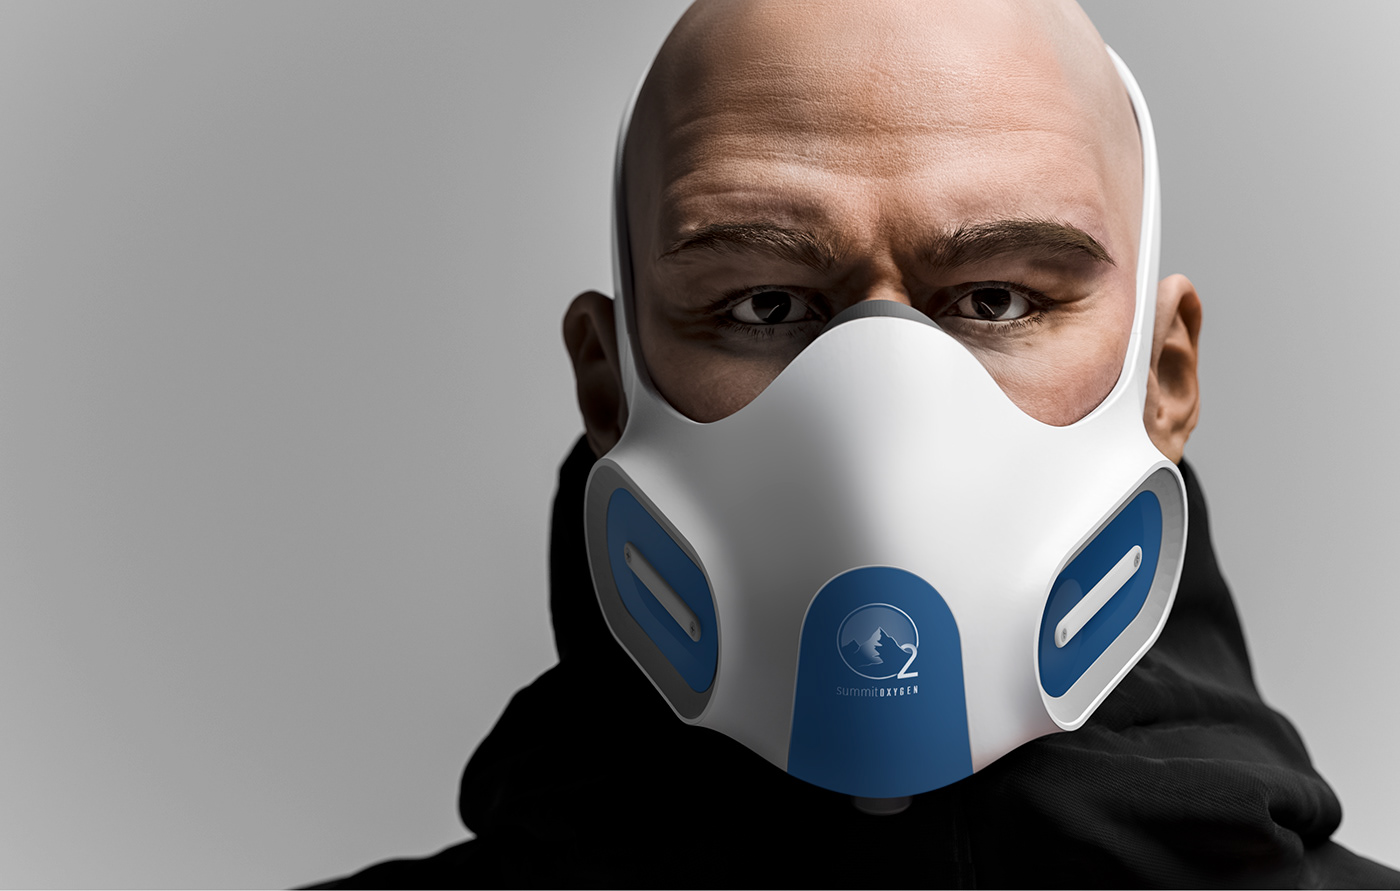 Fashion  ftw Gasmask industrial design  mask oxygen mask product design  summit oxygen transportation